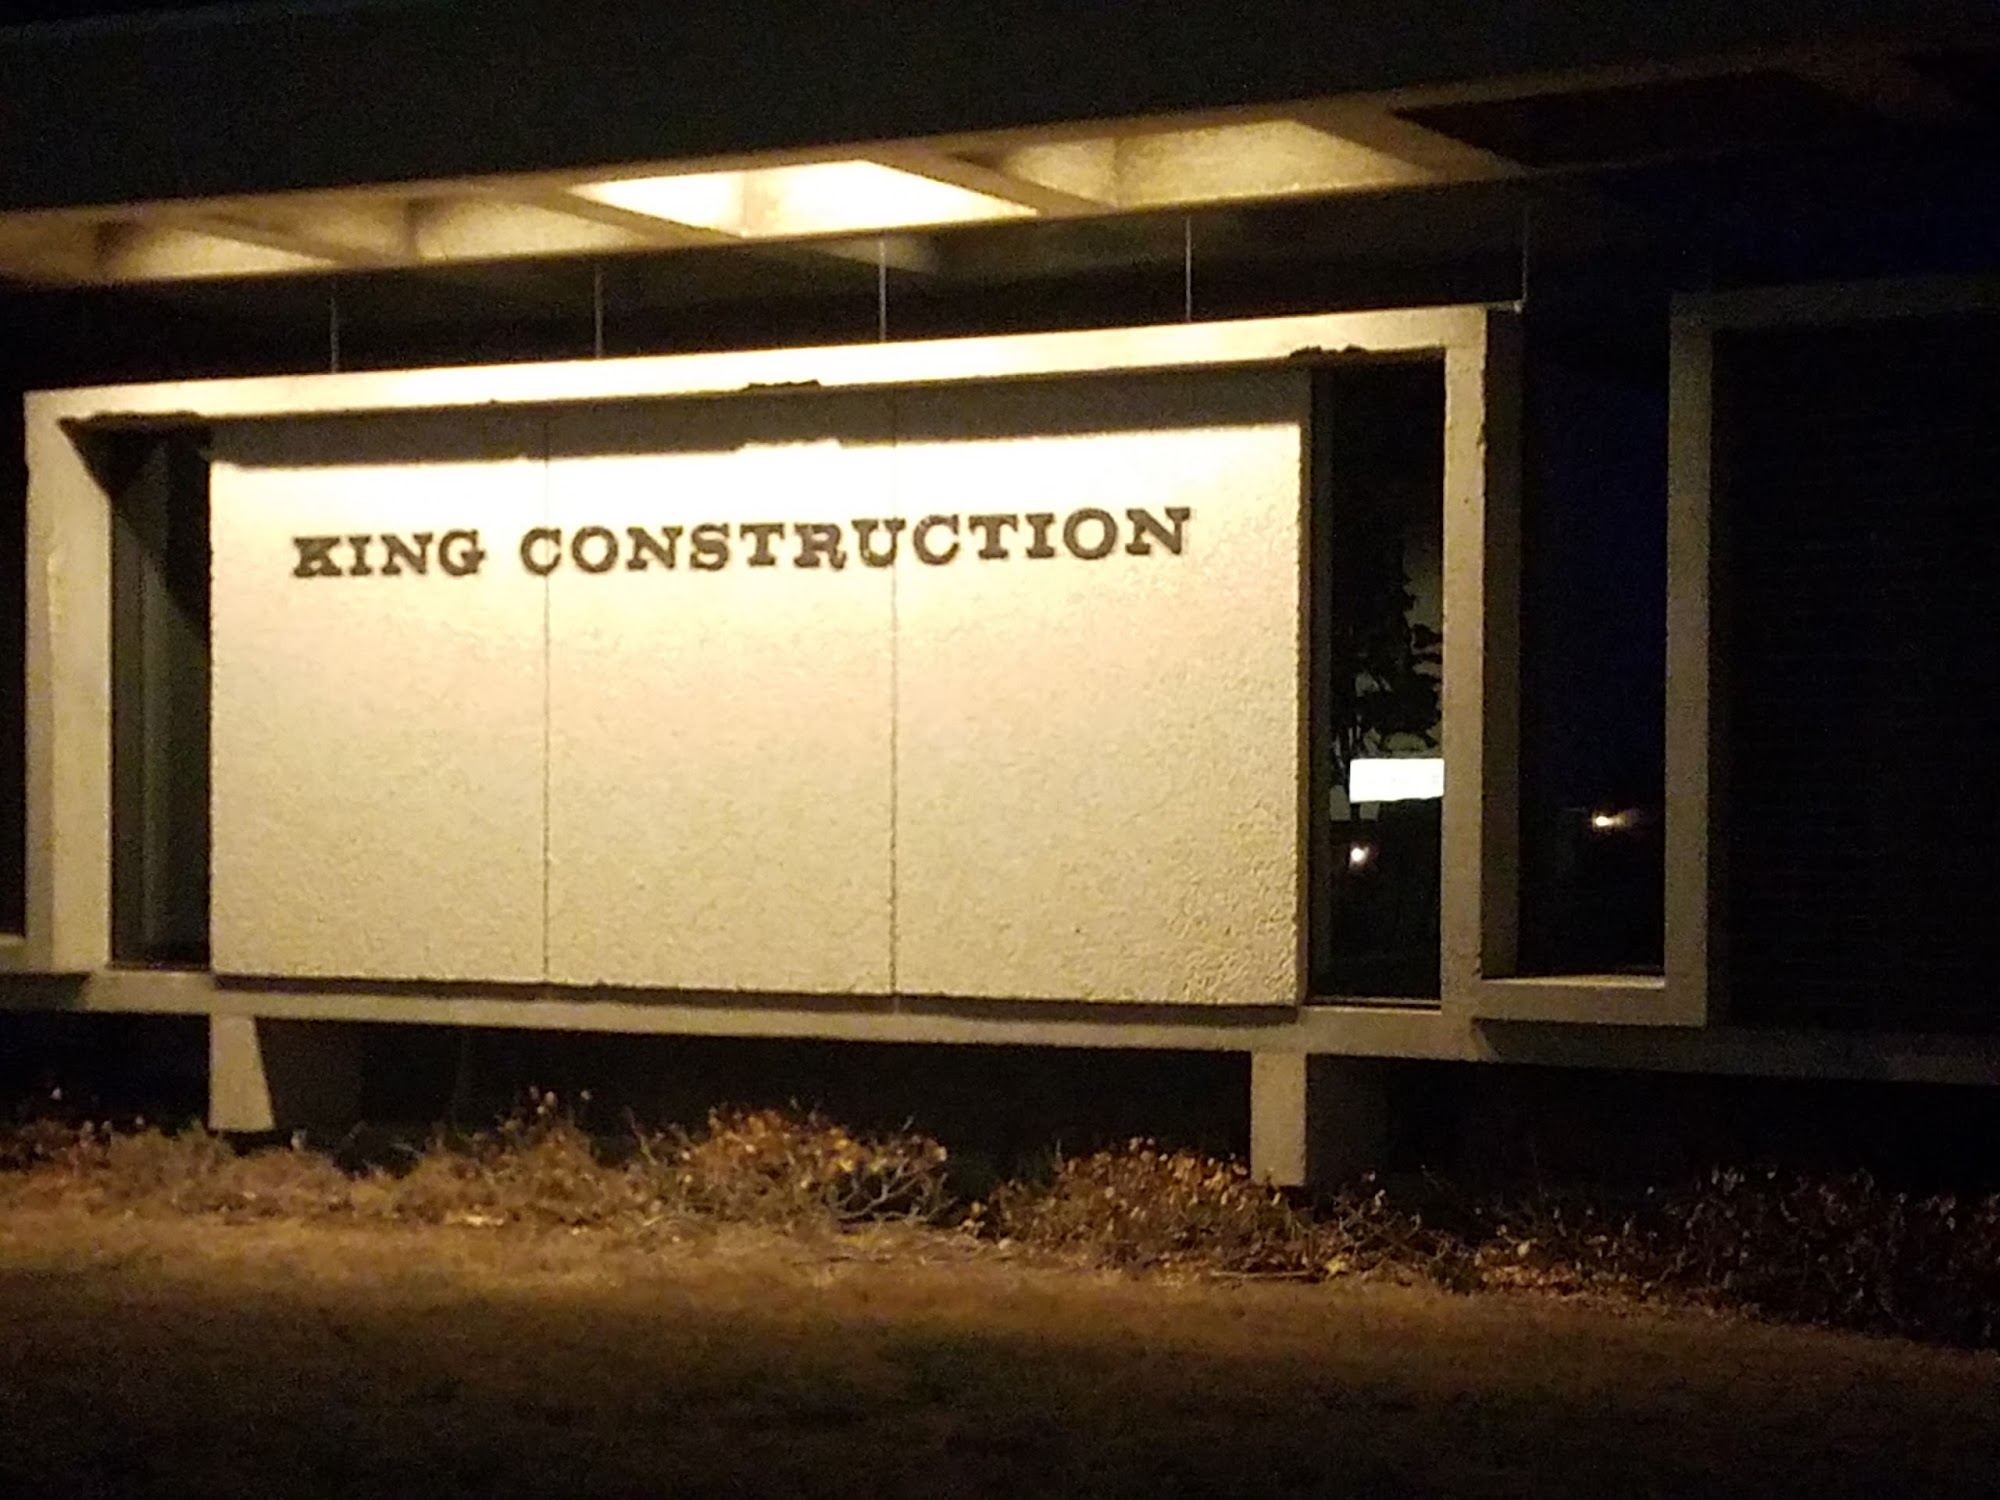 King Construction 301 N Lancaster Ave, Hesston Kansas 67062